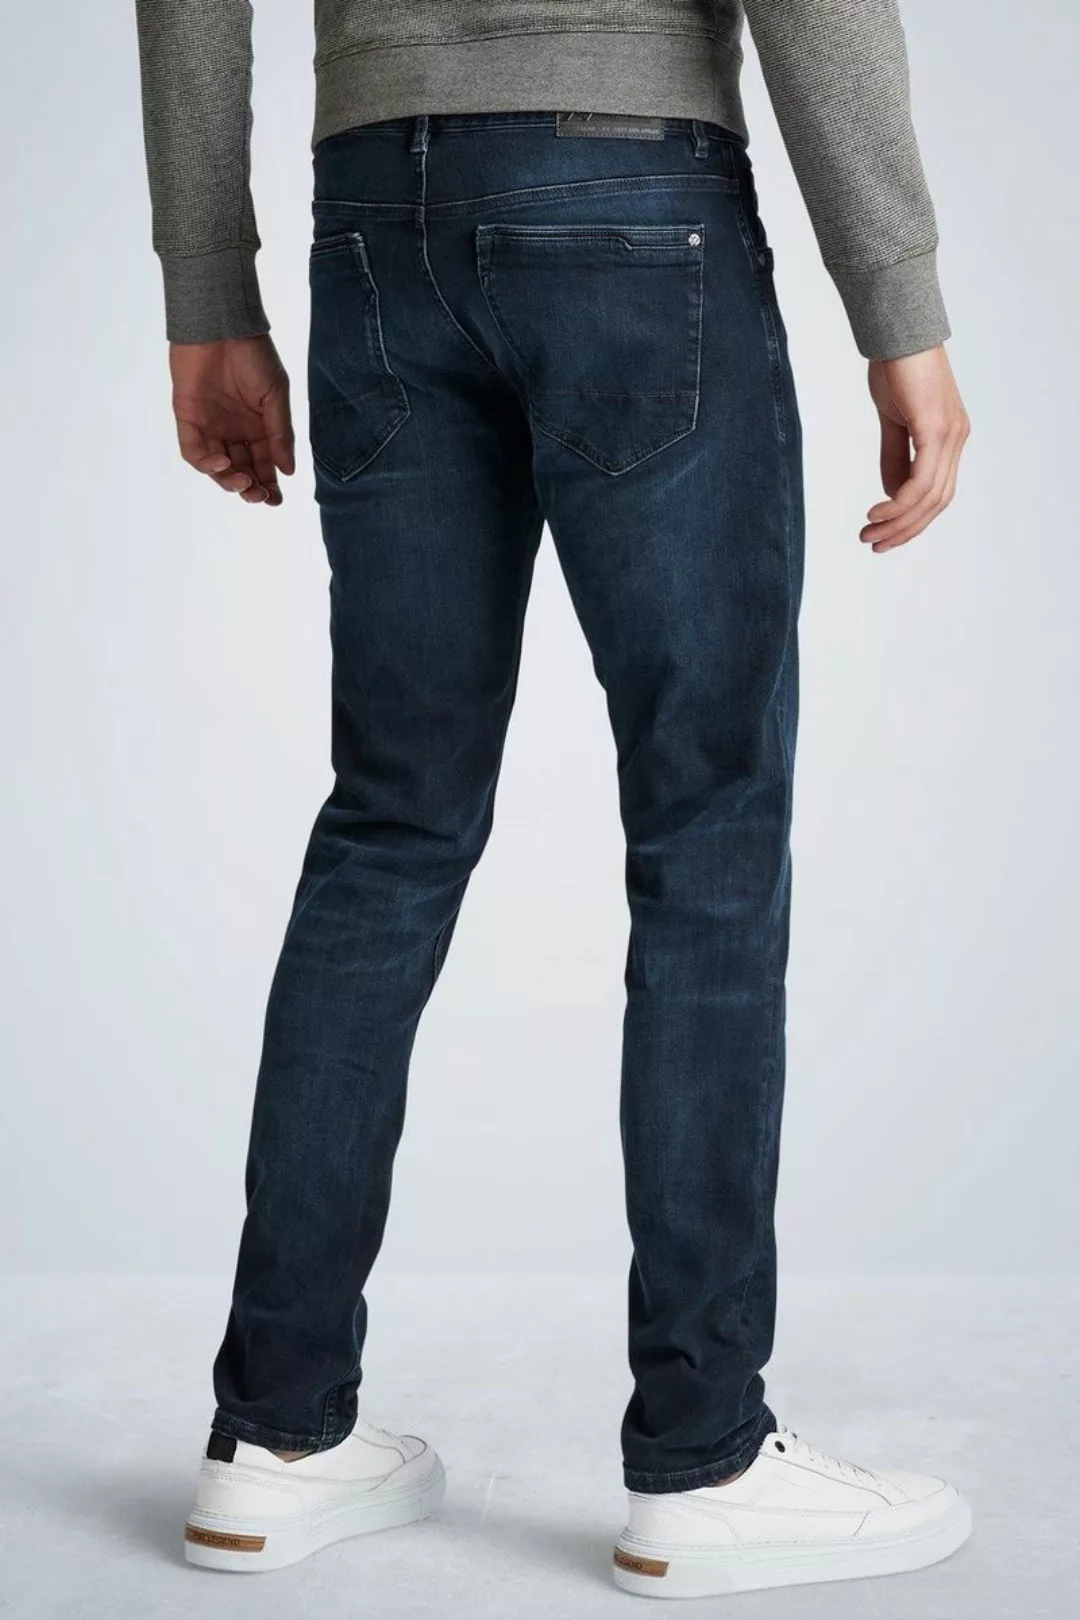 PME Legend XV Jeans Blue Black PTR150 - Größe W 36 - L 30 günstig online kaufen